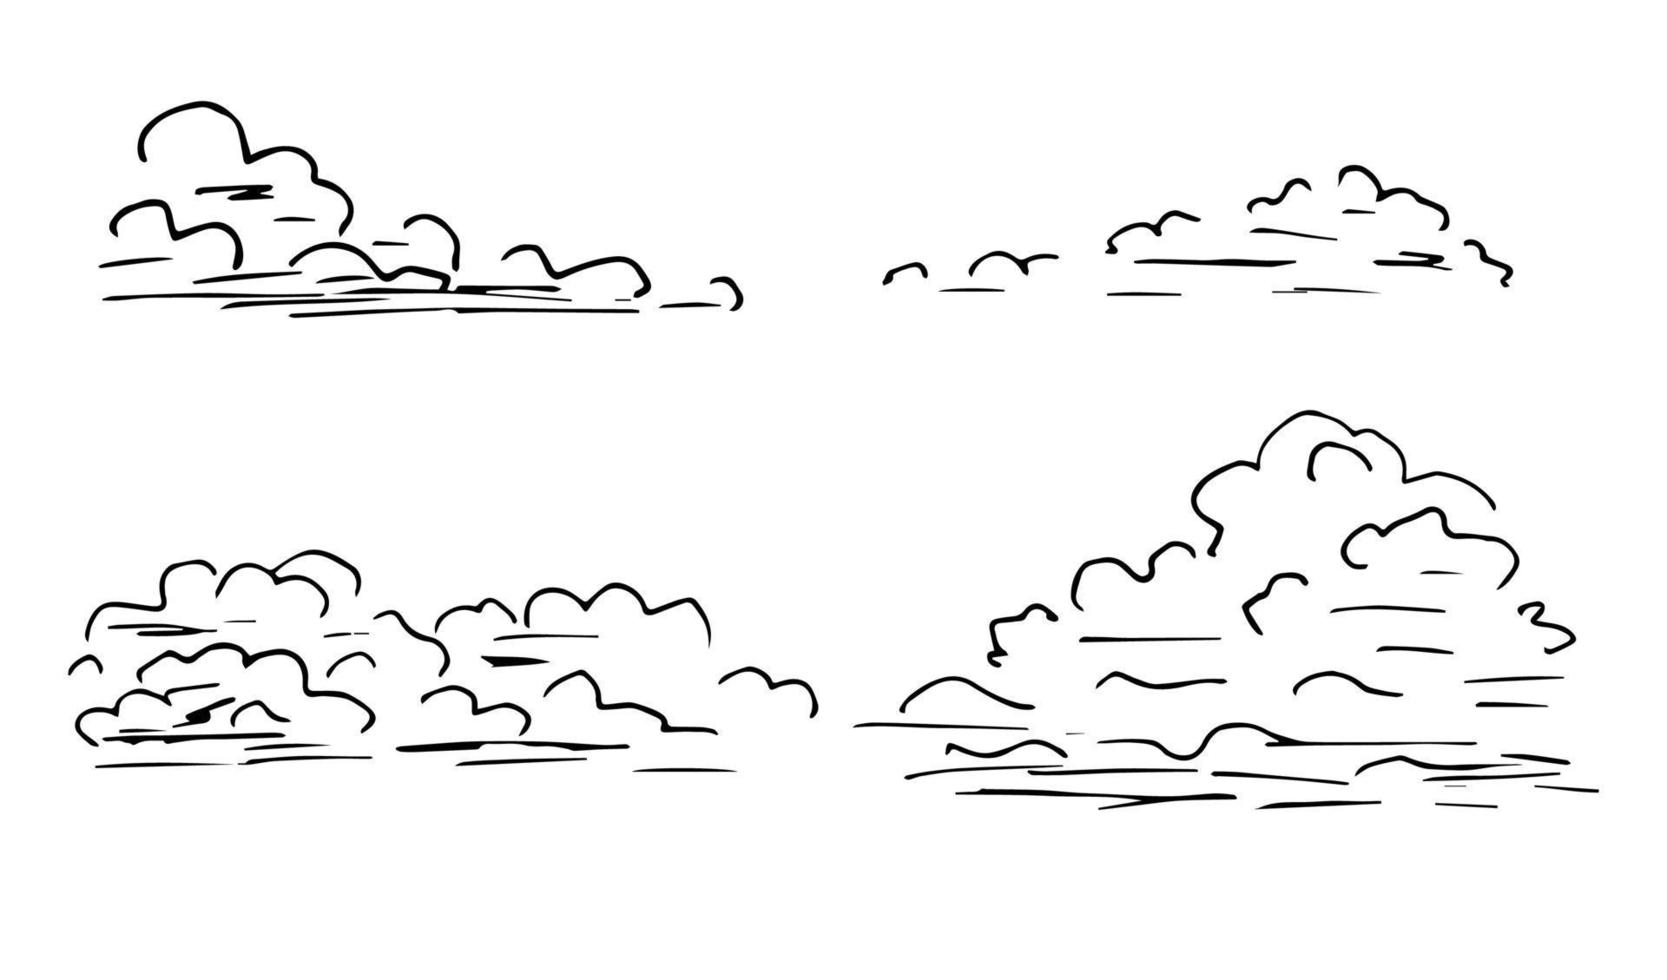 handgezeichneter Vektorsatz aus schwarzem Umriss auf weißem Hintergrund. Cumuluswolken in verschiedenen Formen. Element der Natur, saisonales Wetter, Himmel, Luft. vektor